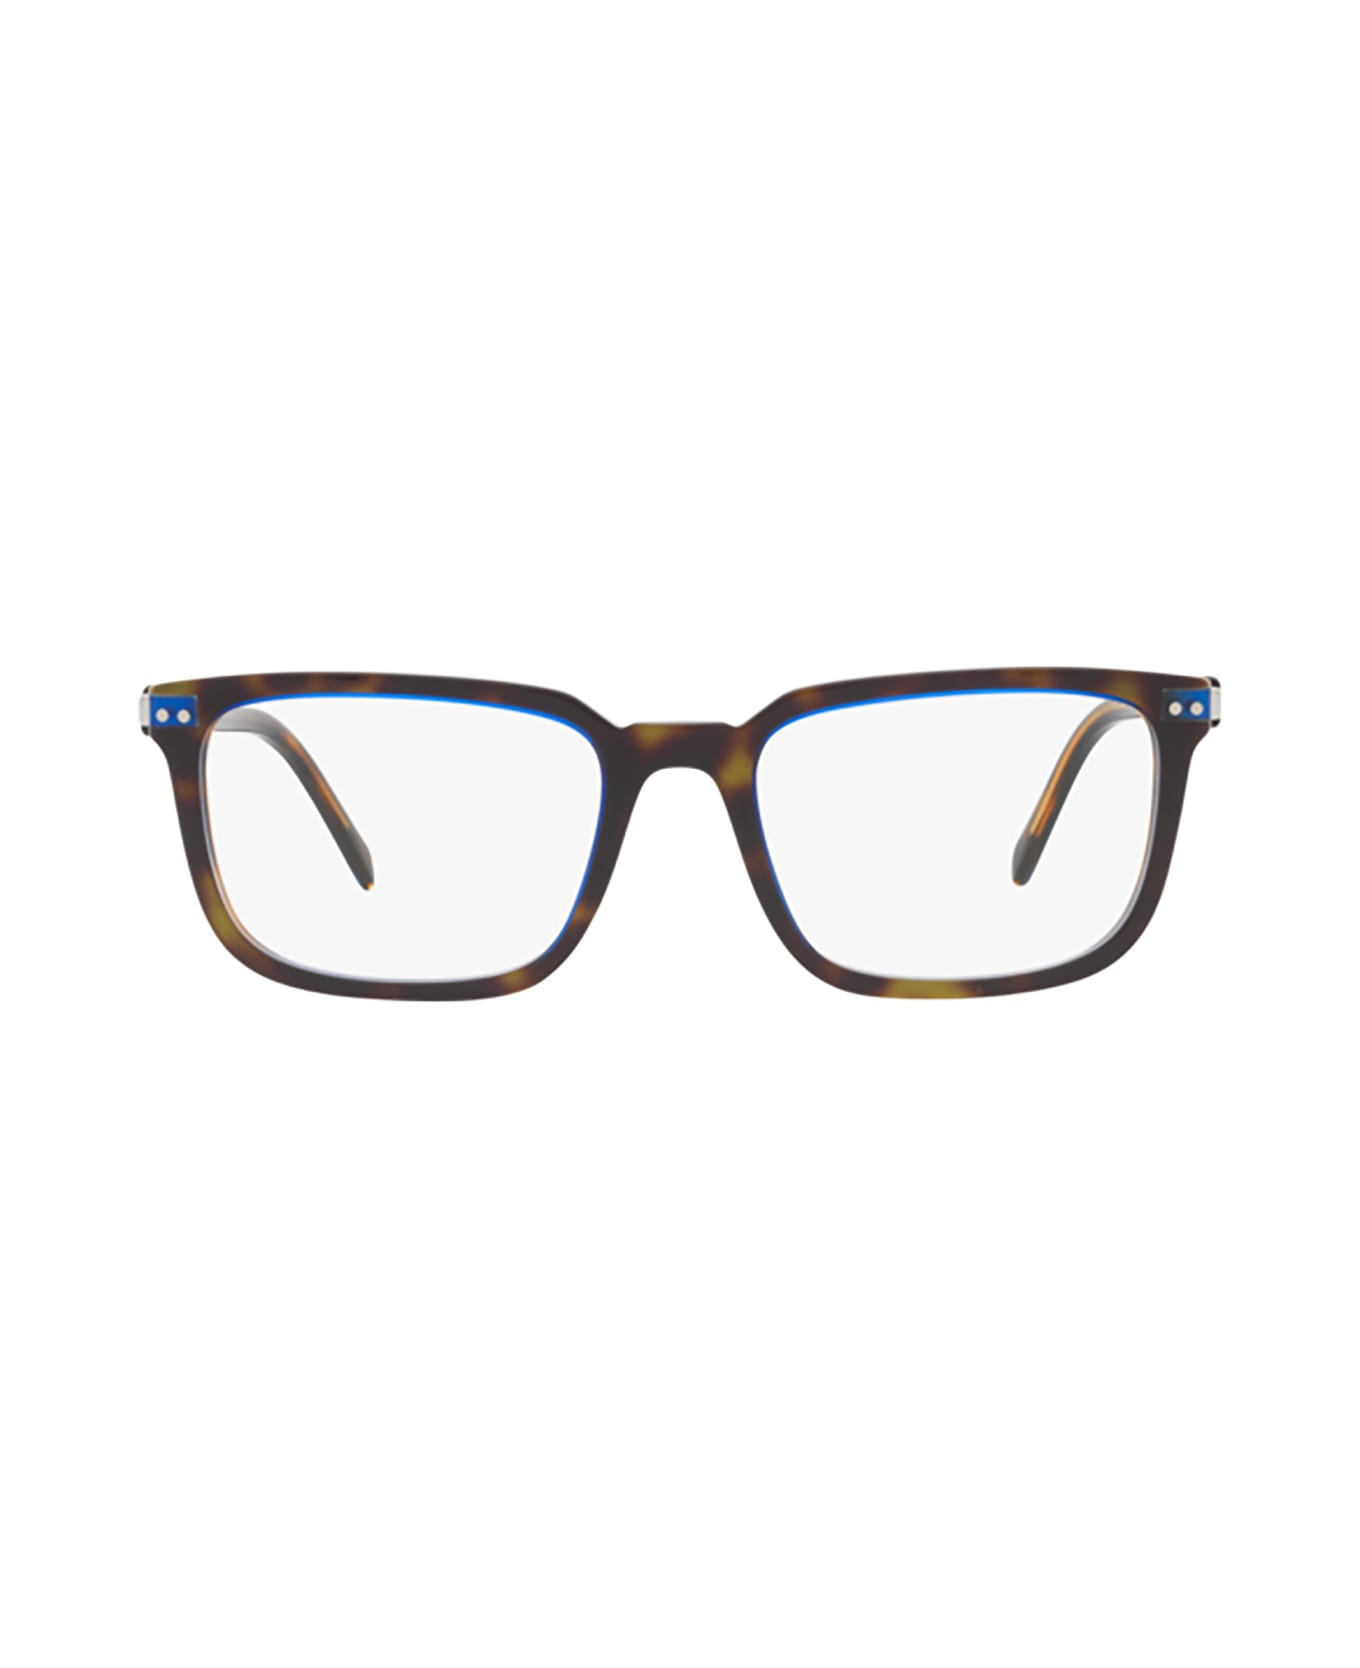 Prada Eyewear Pr 13yv Denim Tortoise Glasses - Denim Tortoise